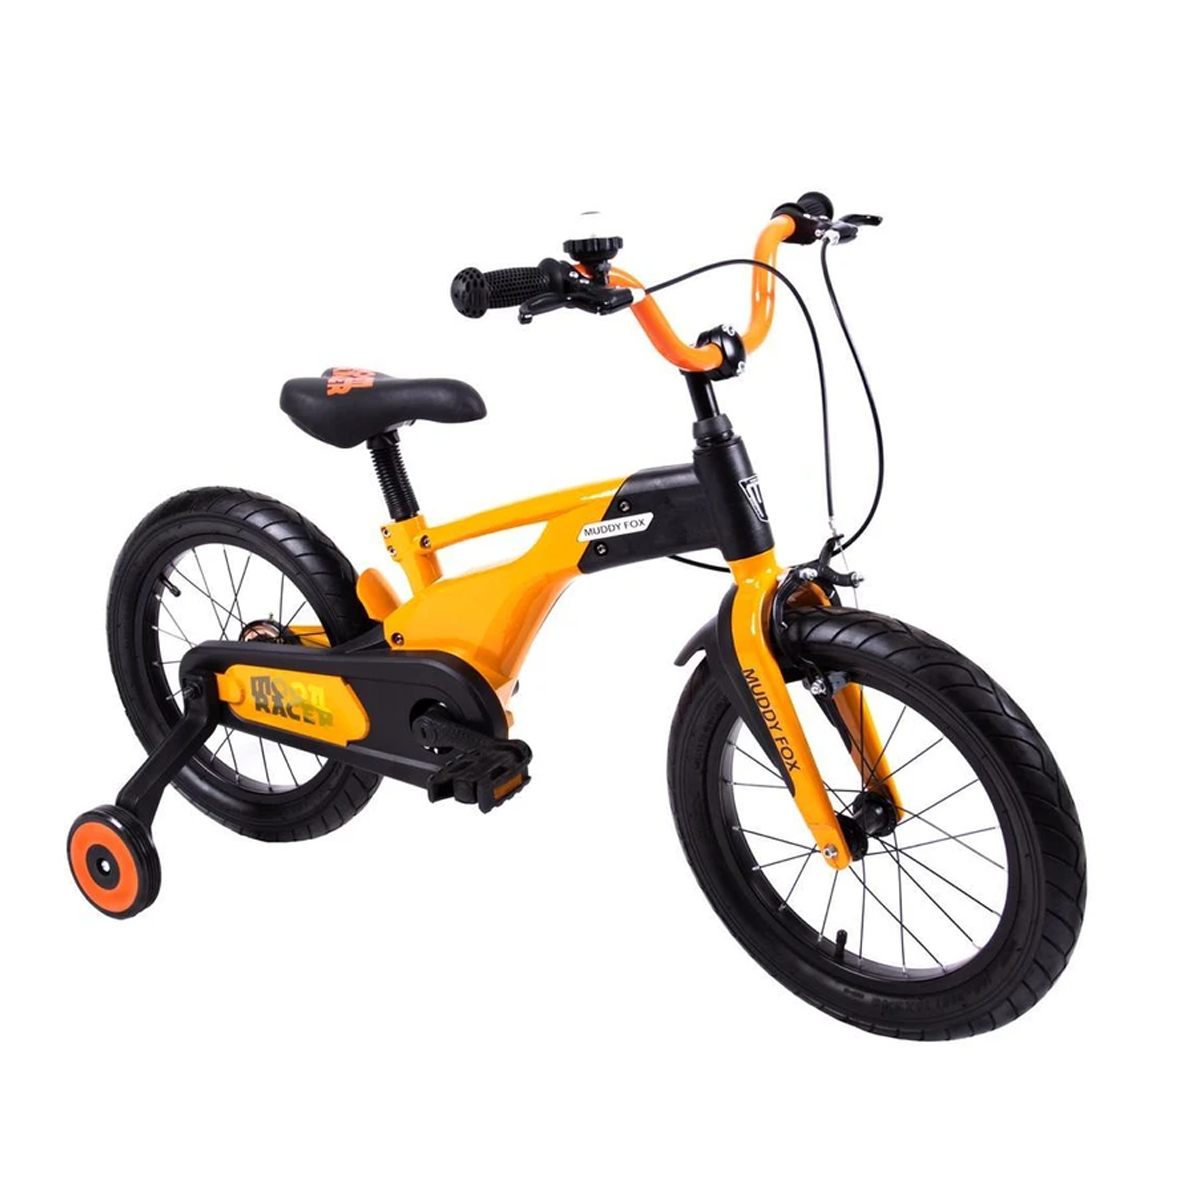 F600 Kids Bike 16 Inch - Little Angel - Orange